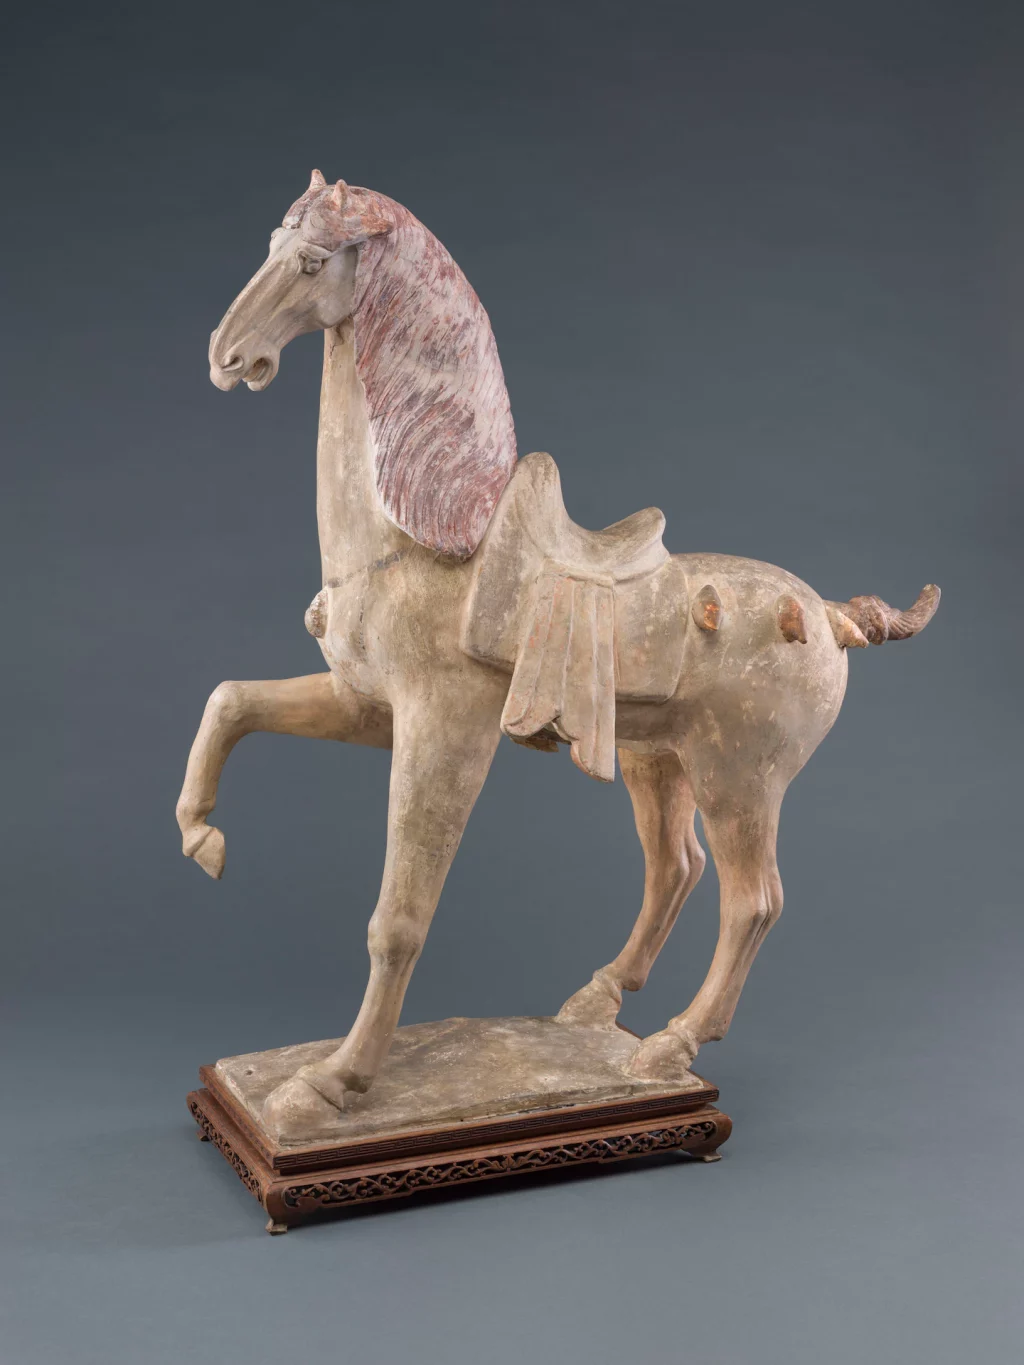 Sztuka spotyka naukę w analizie starożytnego posągu tańczącego konia